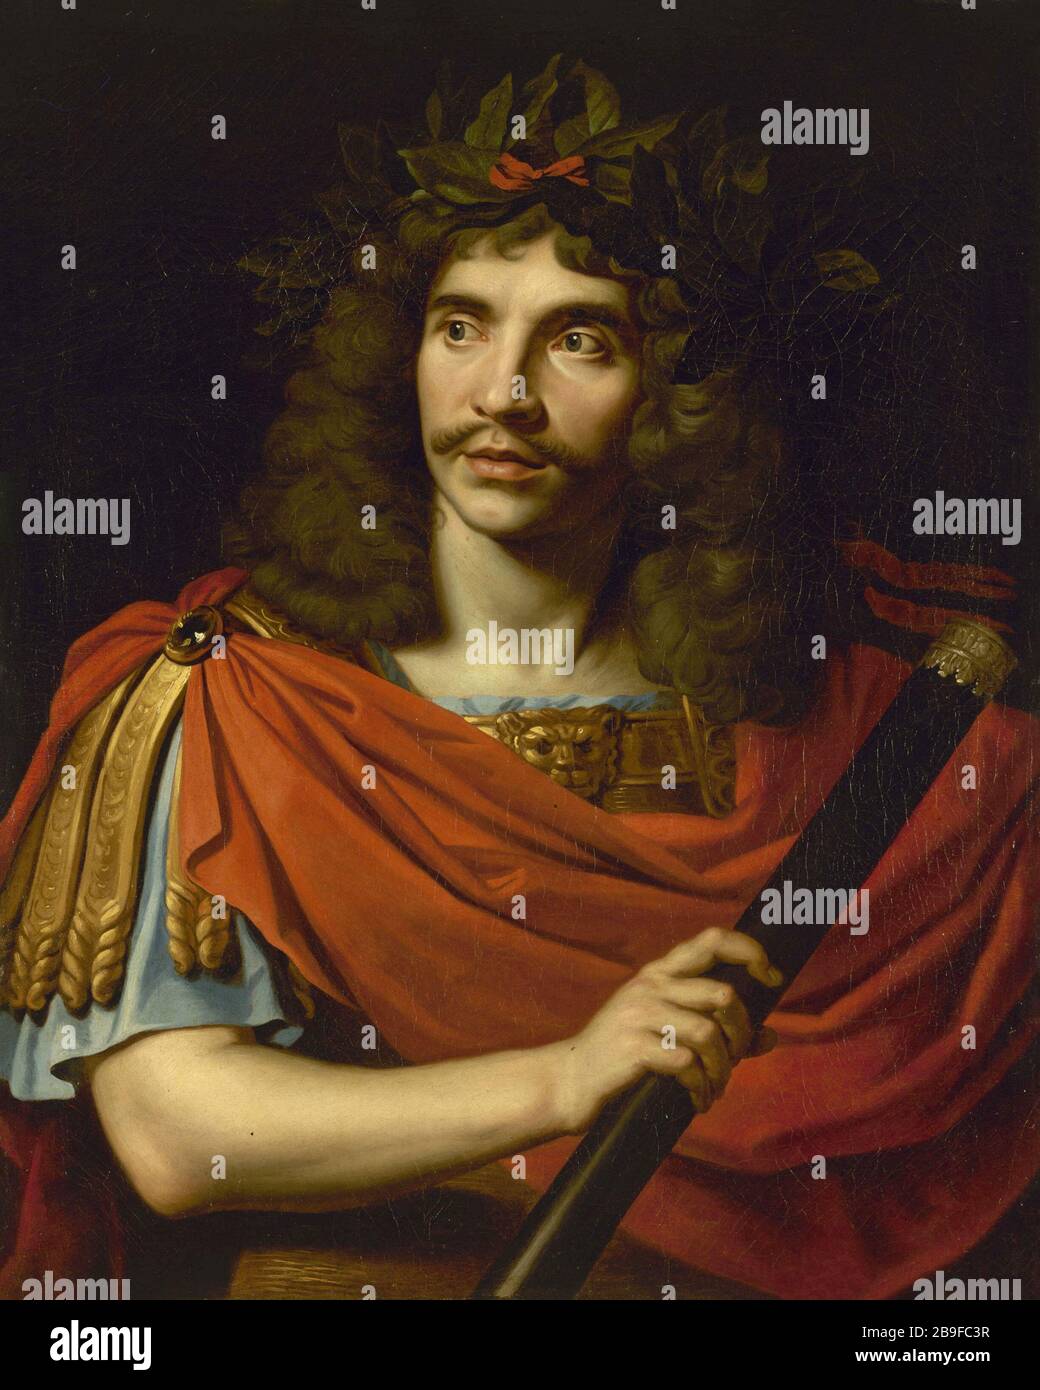 Molière Nicolas Mignard (1606-1668). Molière (1622-1673) dans le rôle de César de la 'Mort de Pompée', tragédie de Corneille. Parigi, musée Carnavalet. Foto Stock